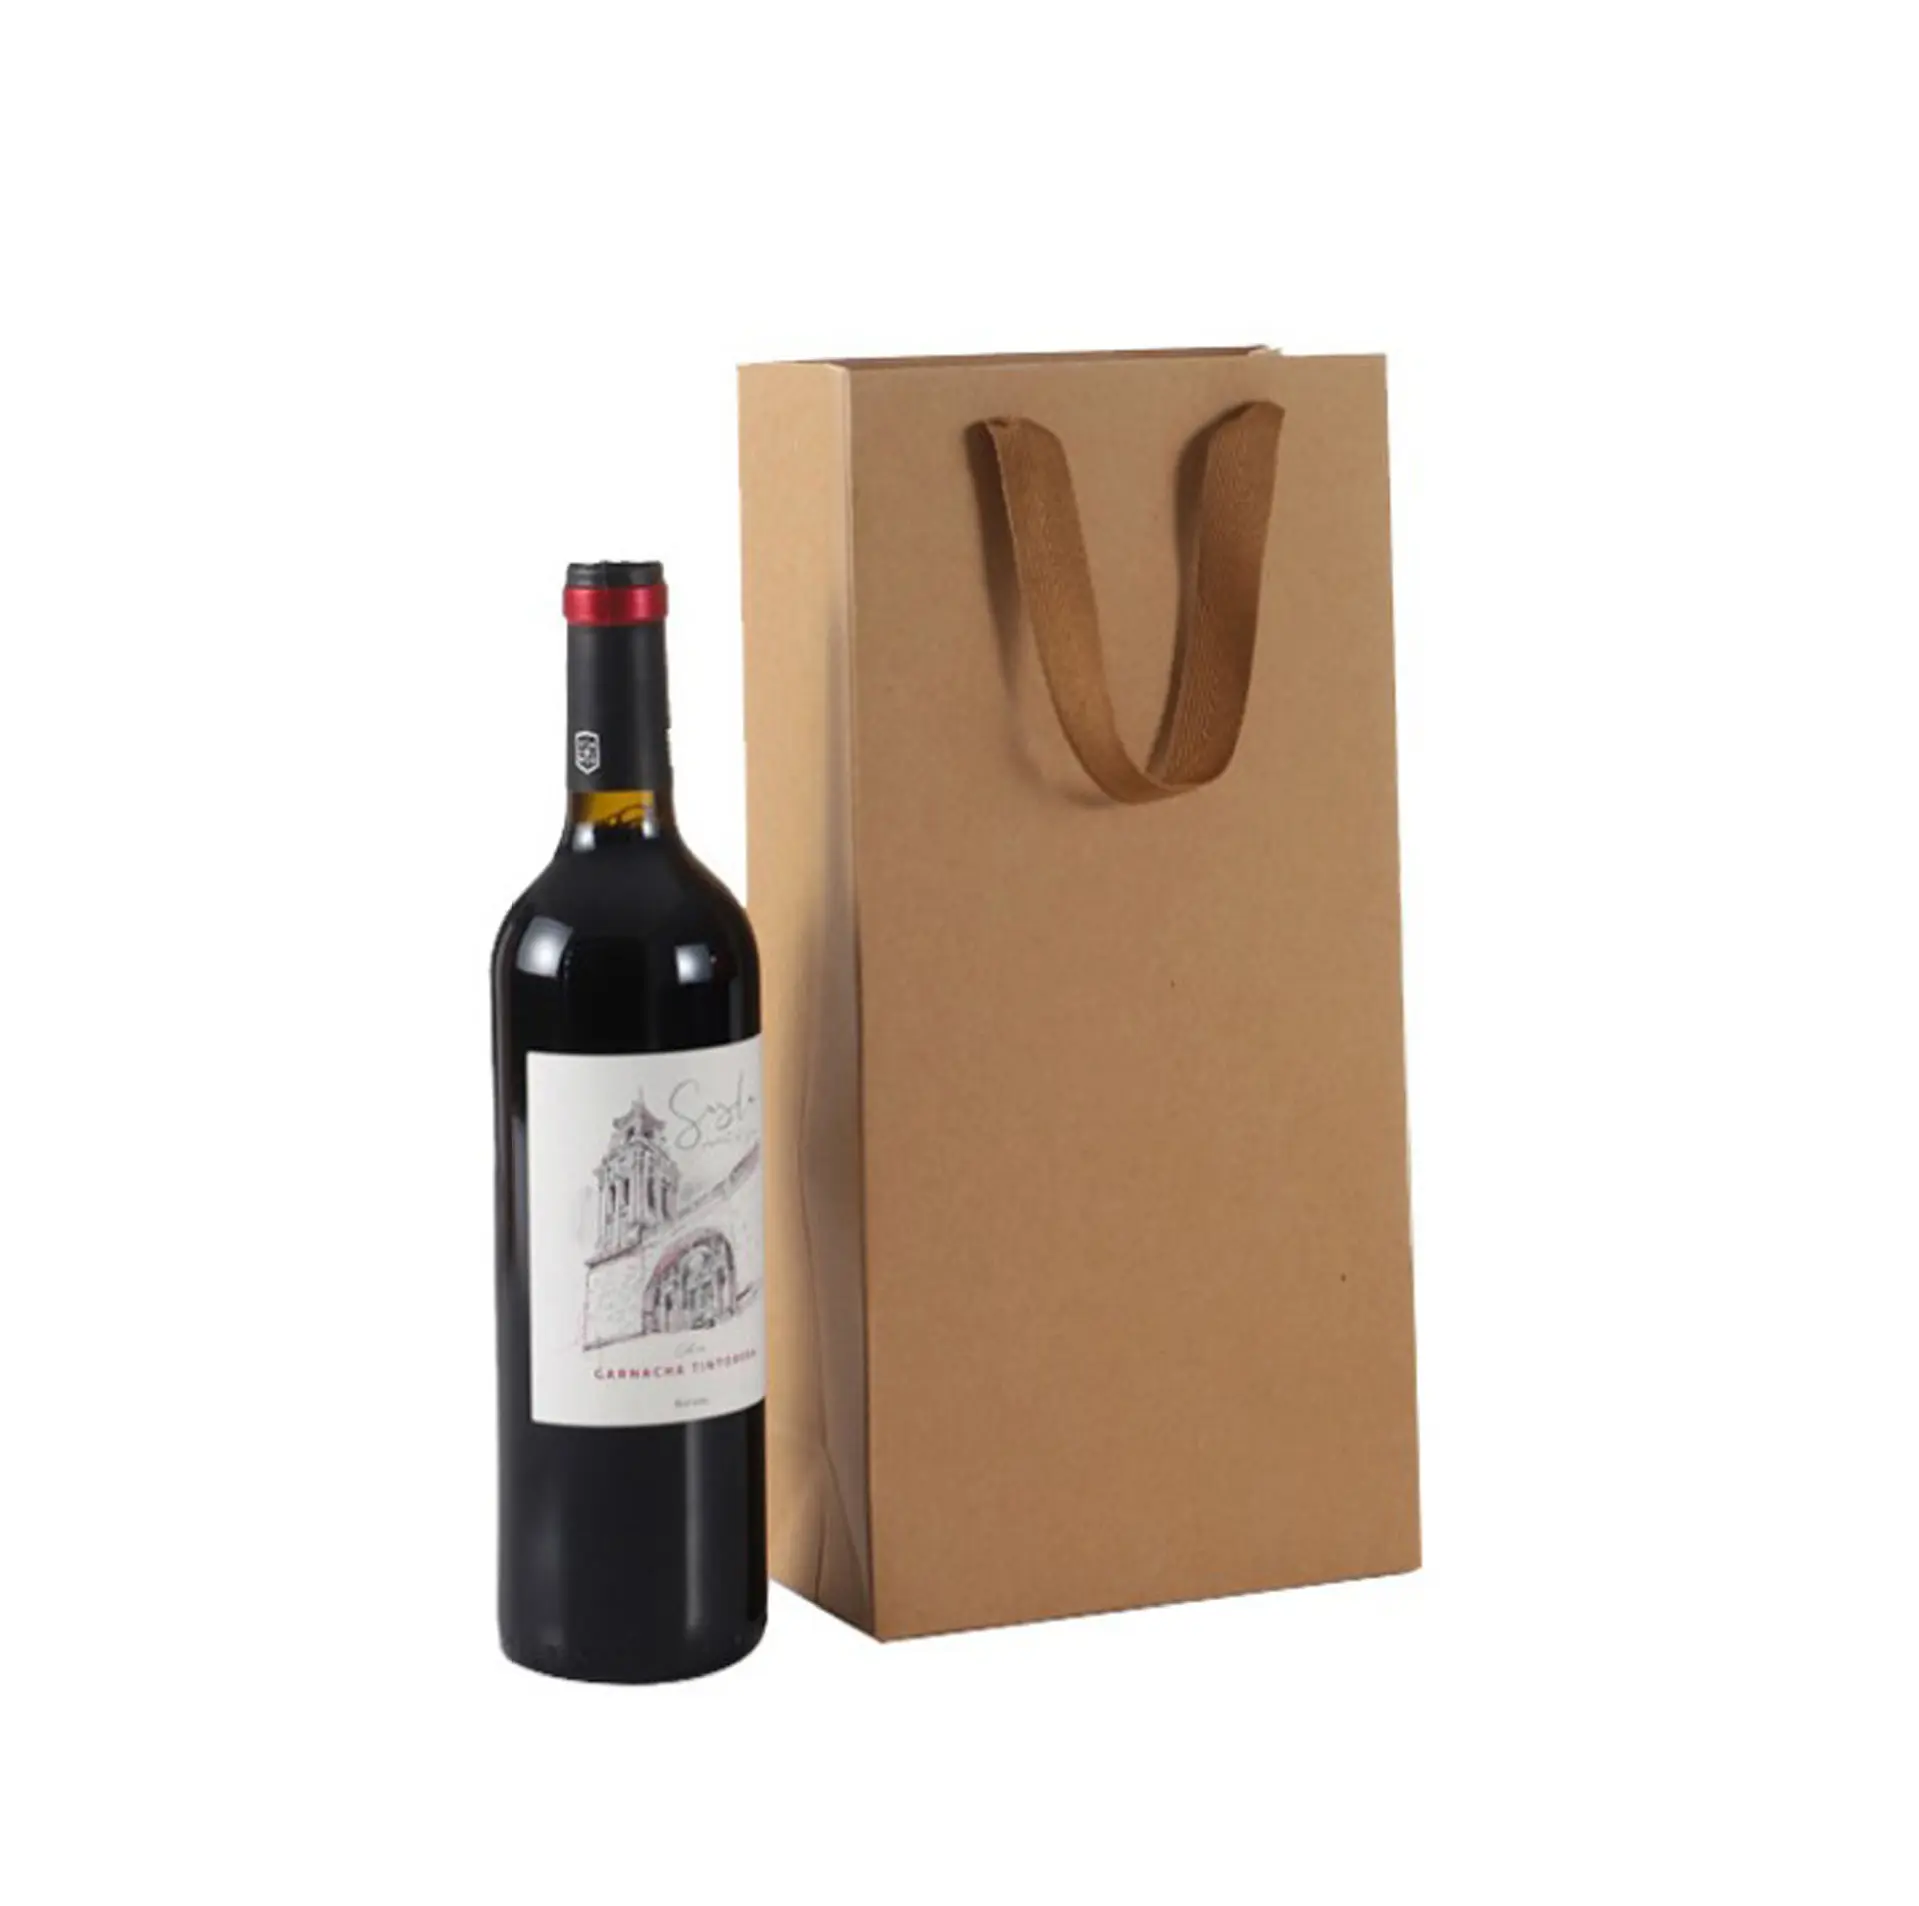 Atacado/personalizado impressão garrafa de vinho de papel de presente, único saco de garrafa de vinho, dupla garrafa de vinho saco de presente